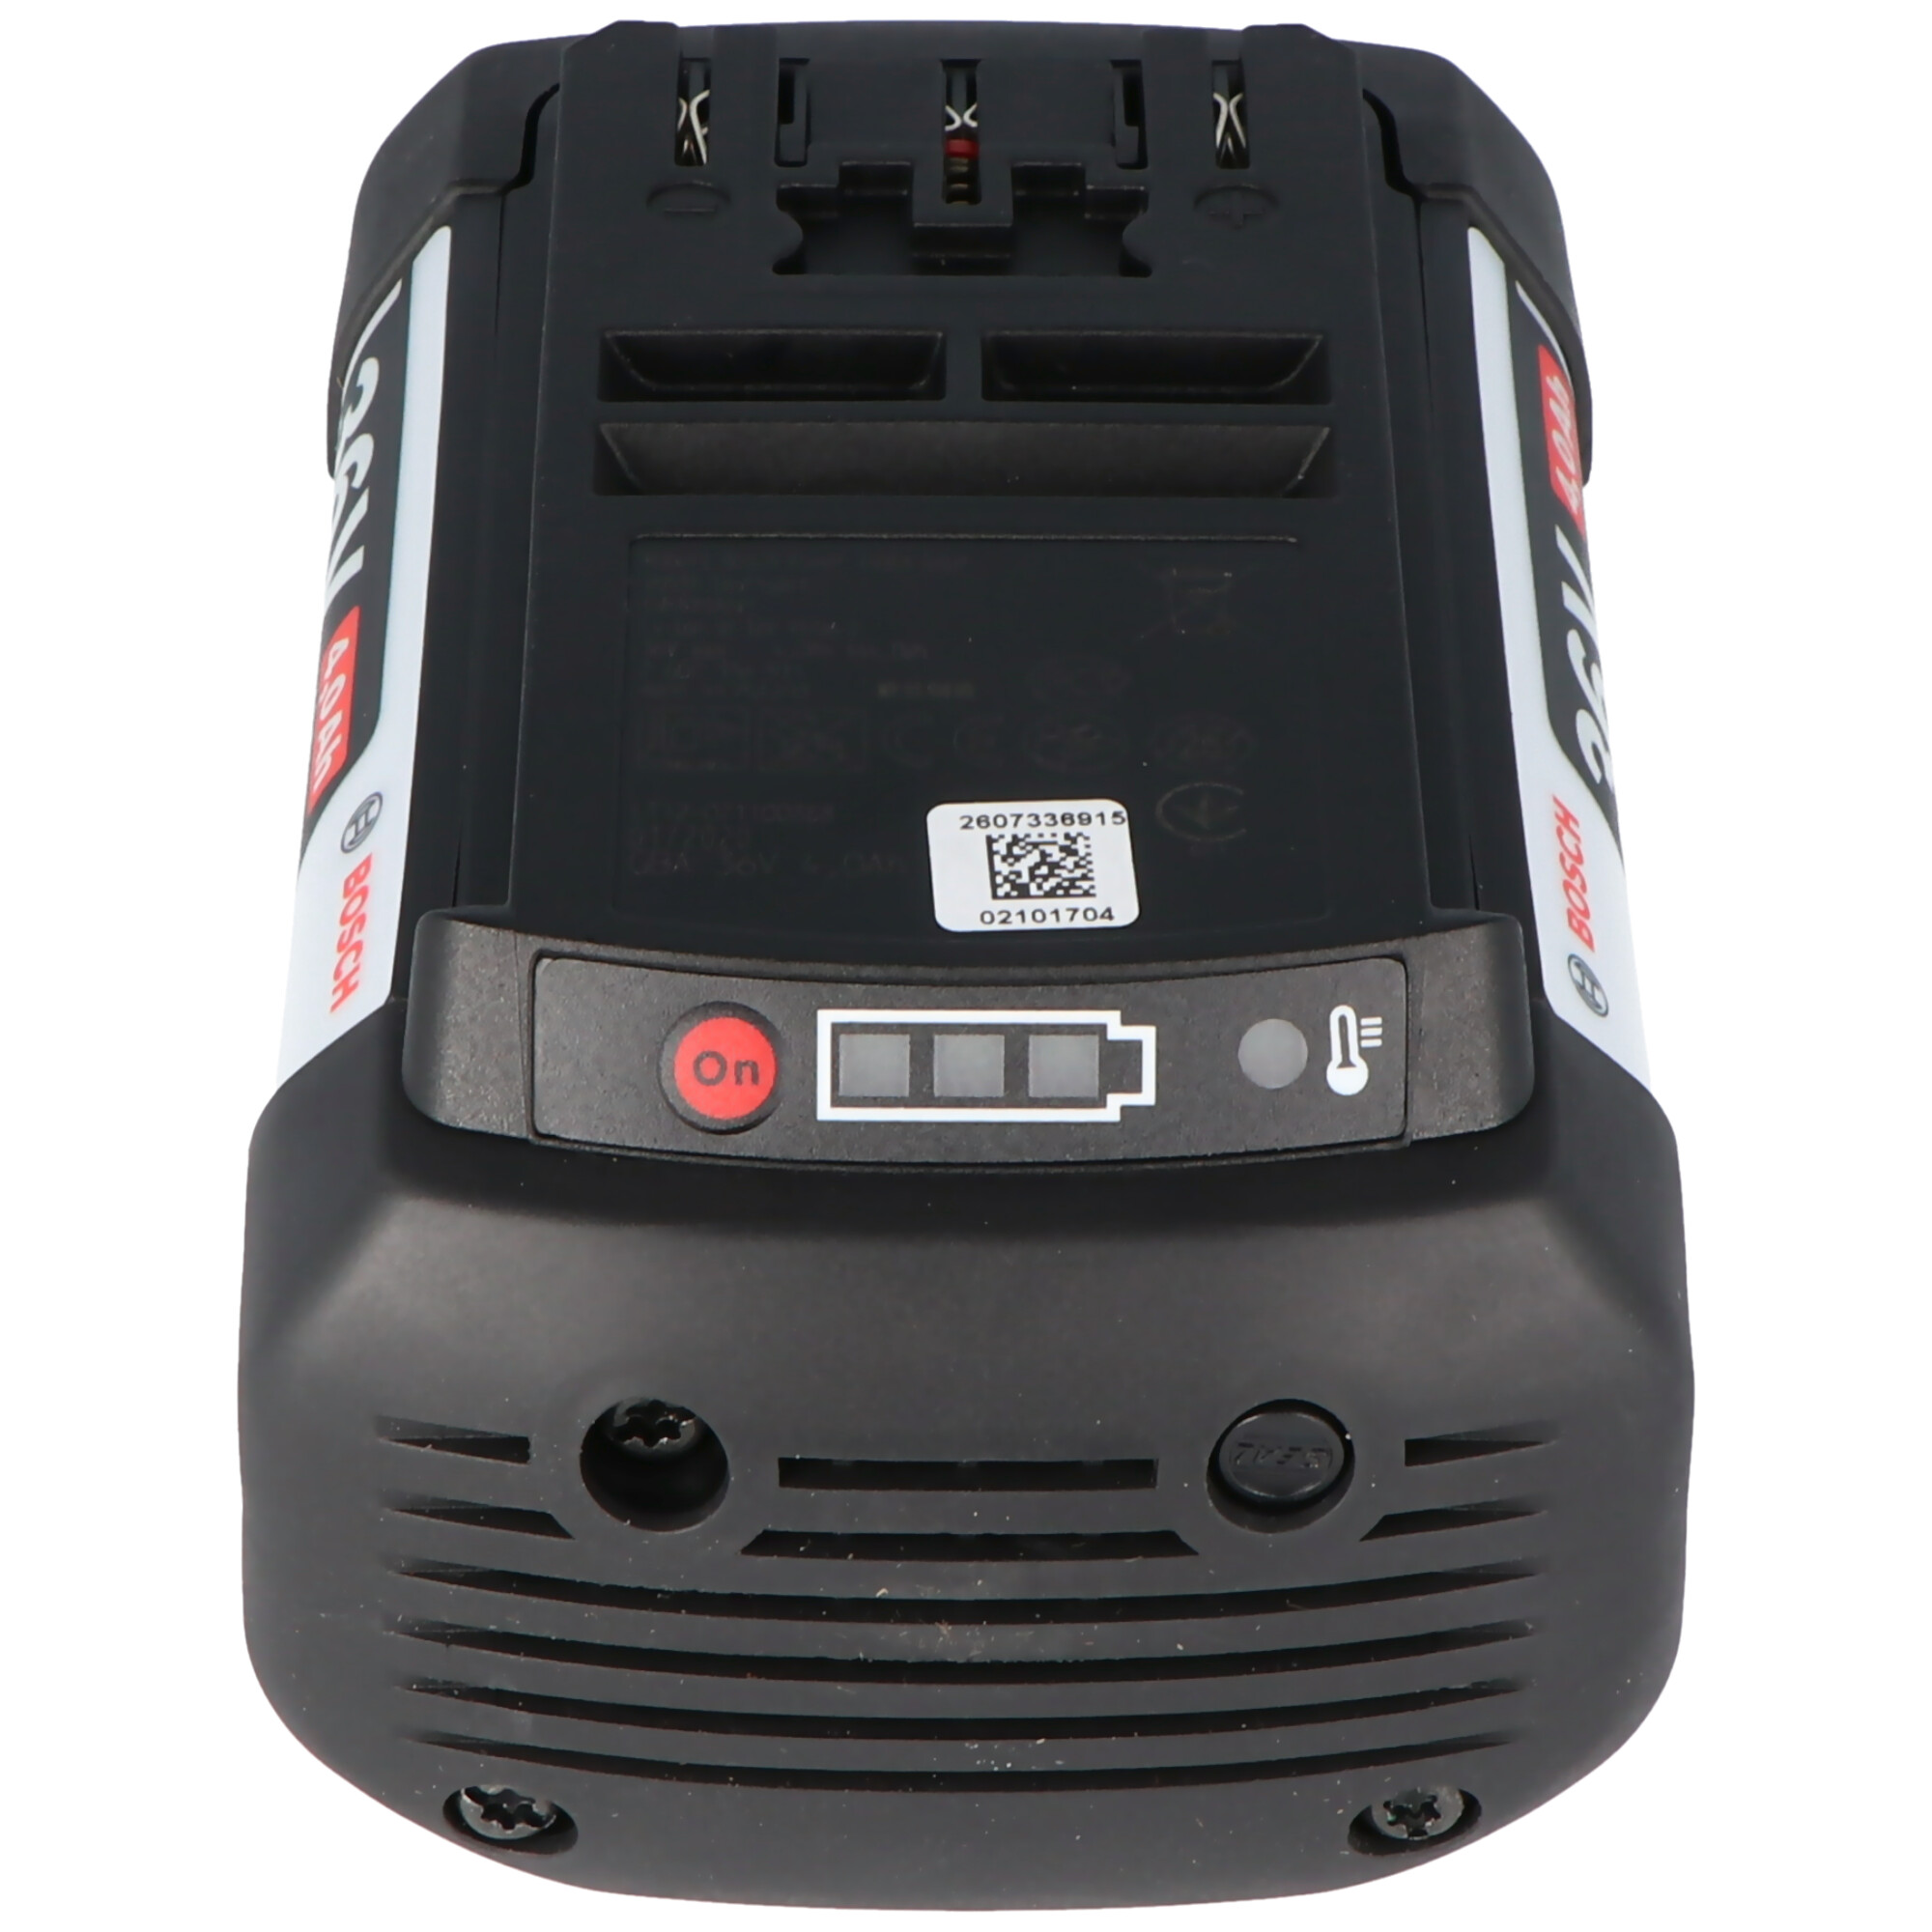 Bosch 36 volt batteri 4Ah med LED indikator 2607336915, F016800346, 3165140742085 | 36 Volt | 10,8 Volt | Bosch | Batteri til værktøj | Genopladelige | Akkushop-Denmark